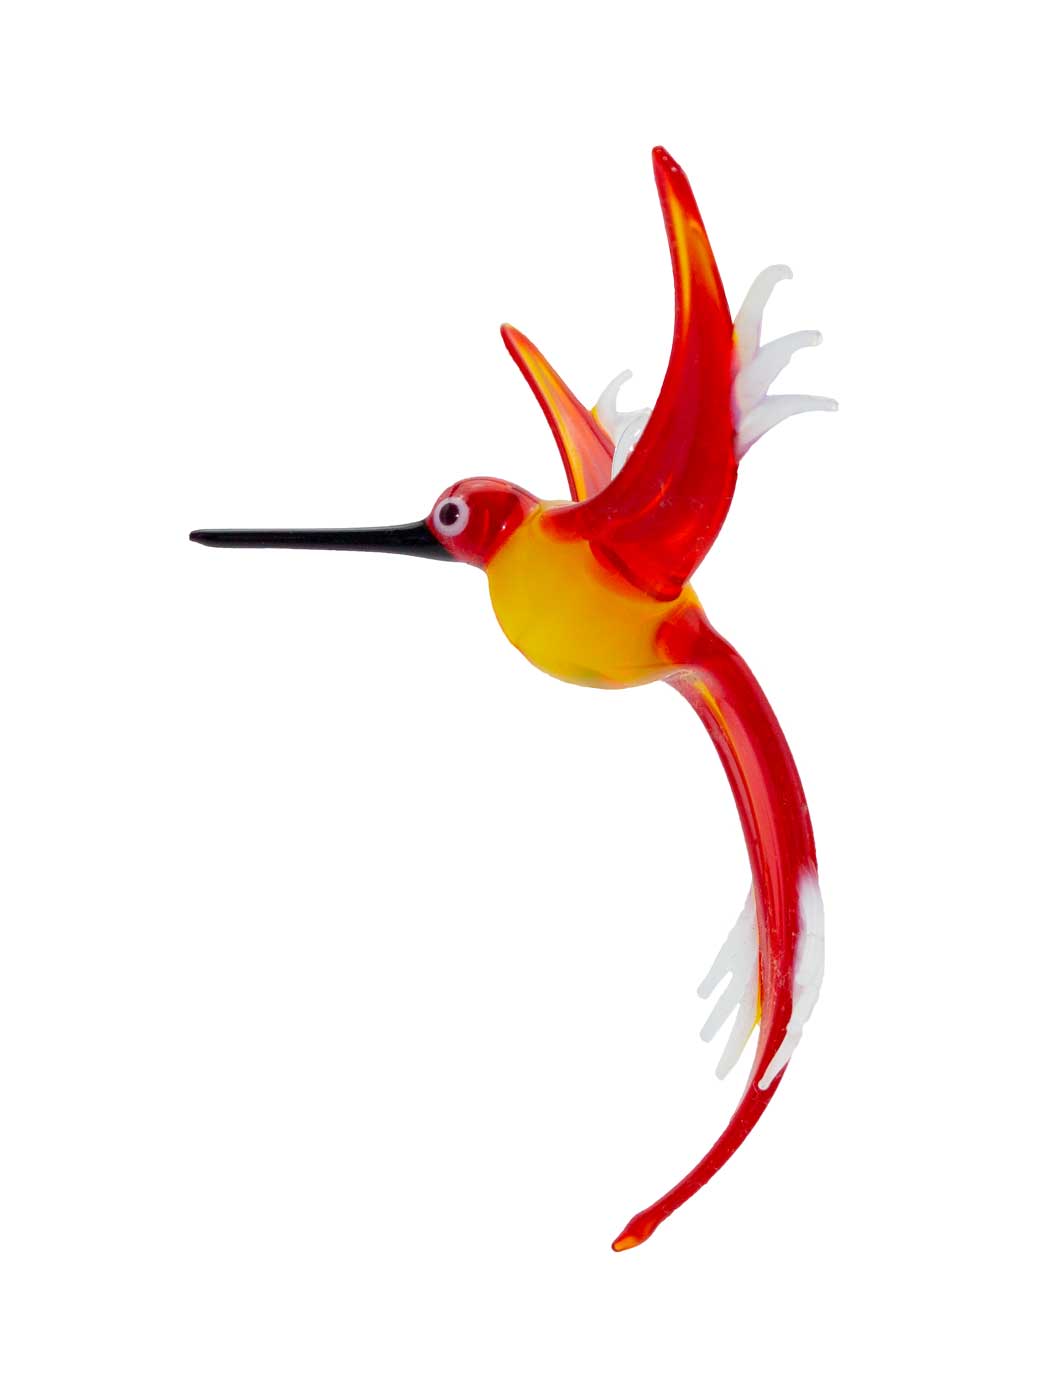 Glasfigur Kolibri hängend gelb rot